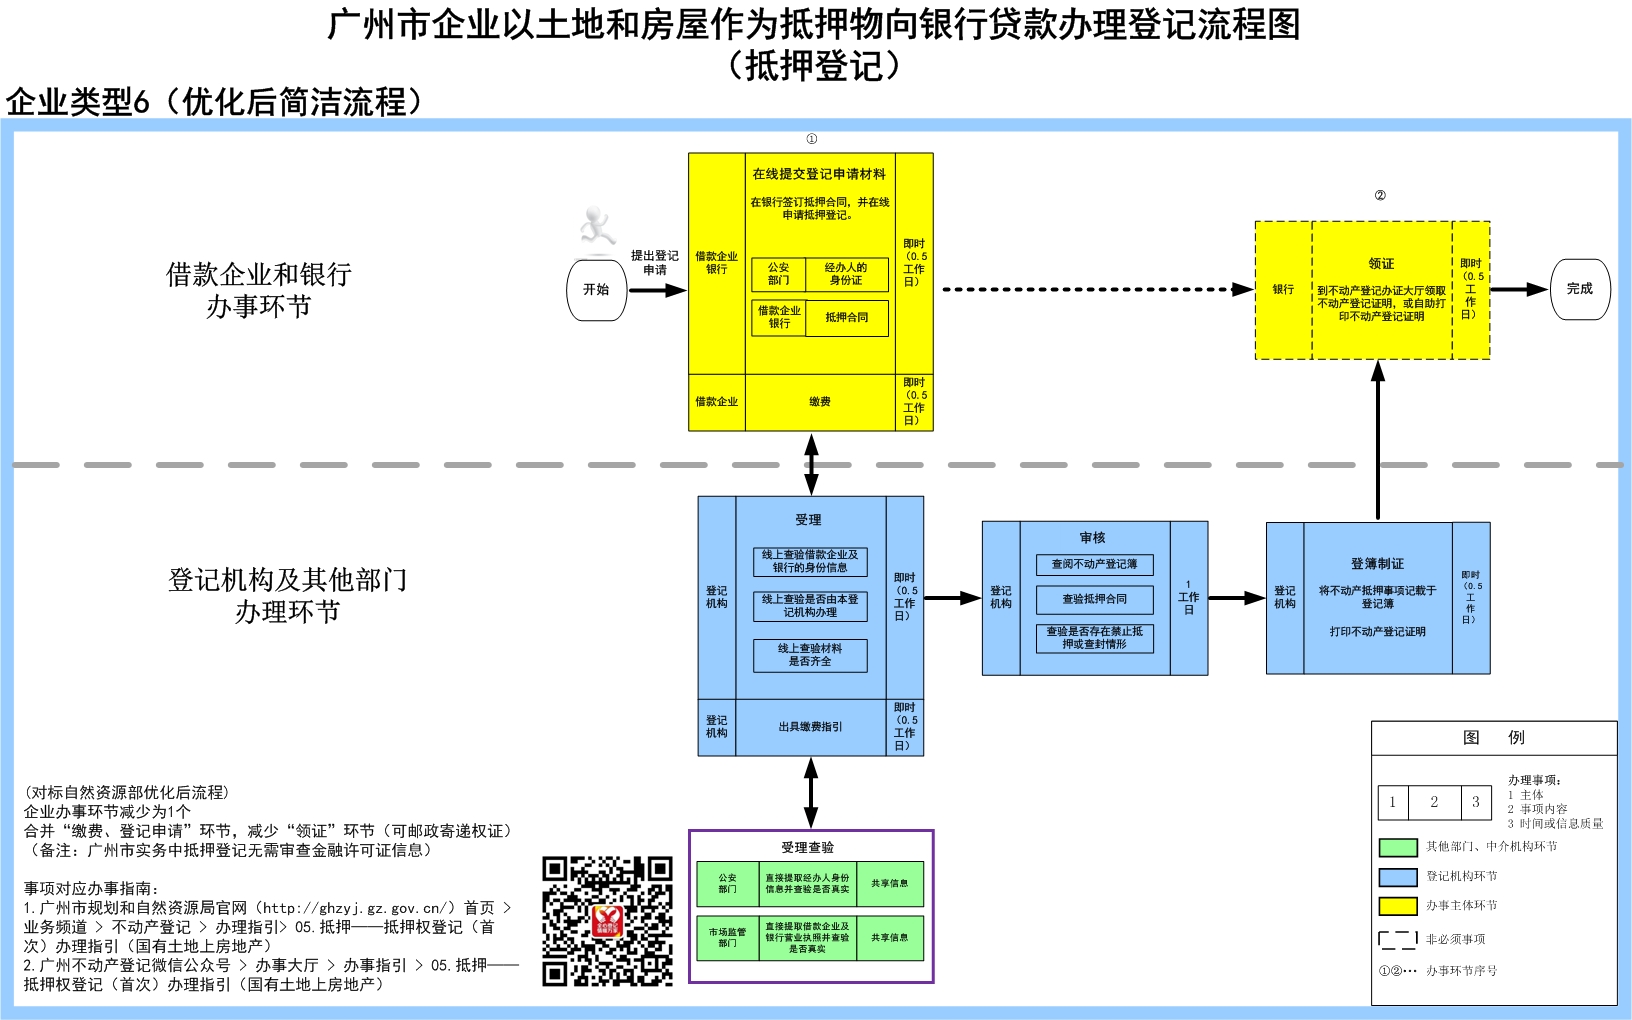 6企业以土地和房屋作为抵押物向银行贷款办理登记流程图（抵押登记）-广州市.jpg